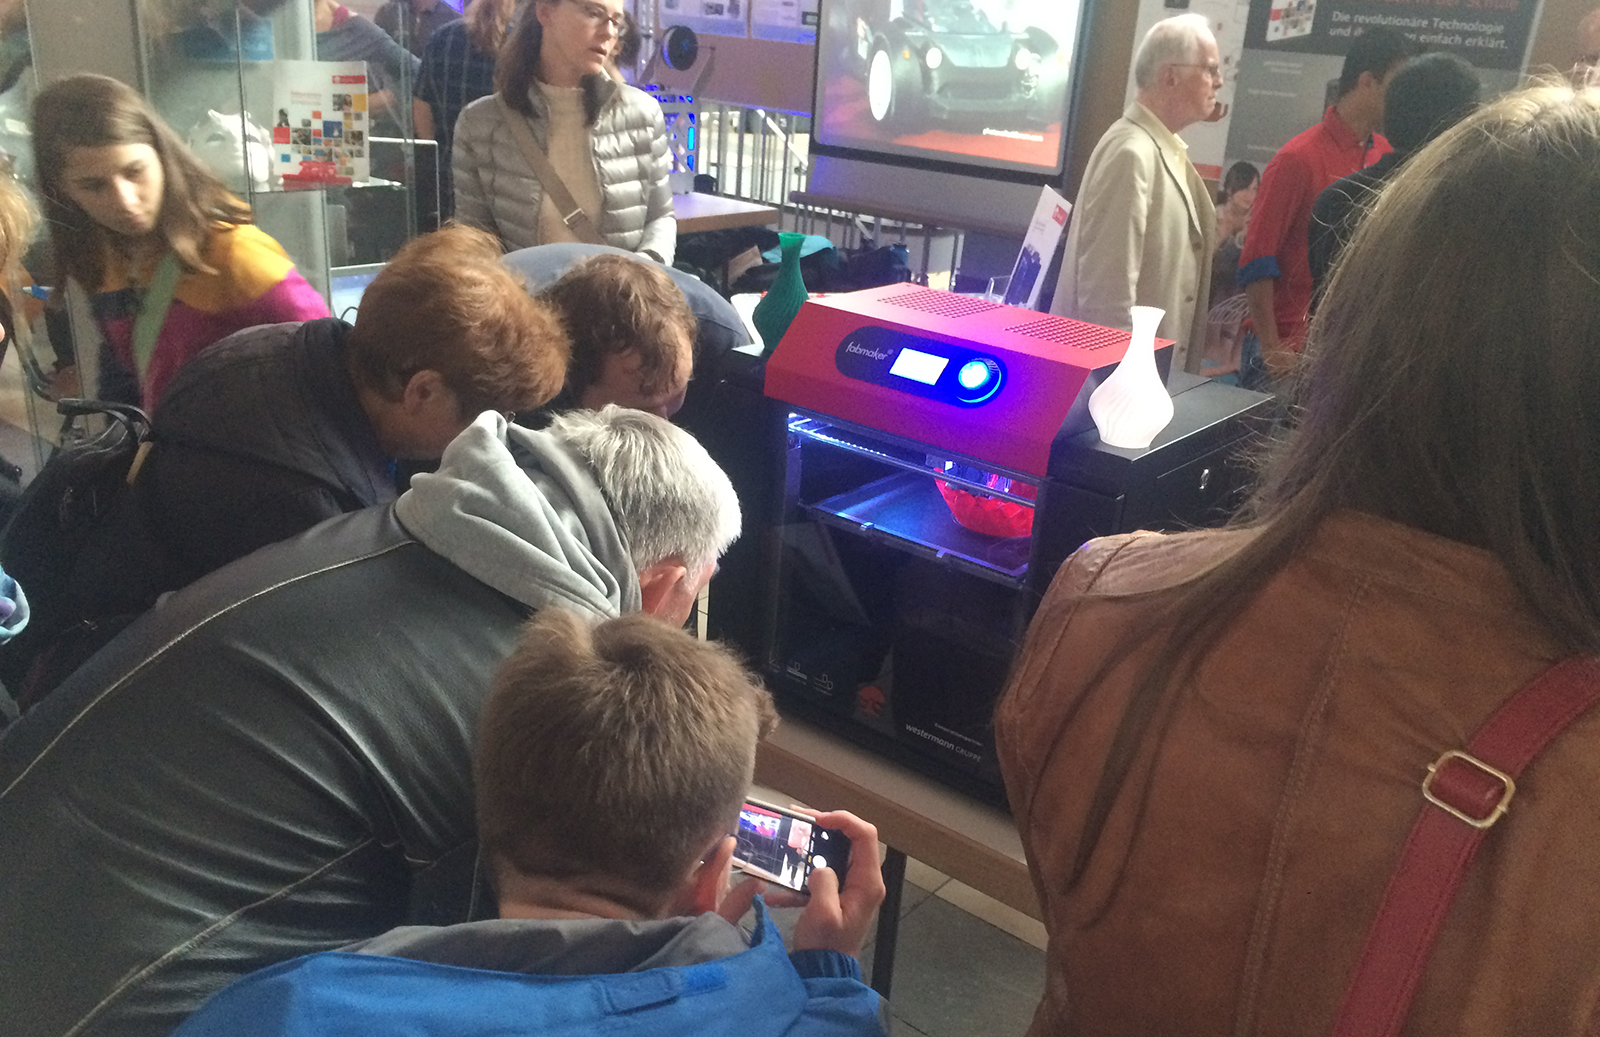 Besucher betrachten den 3D-Drucker beim Druckvorgang.